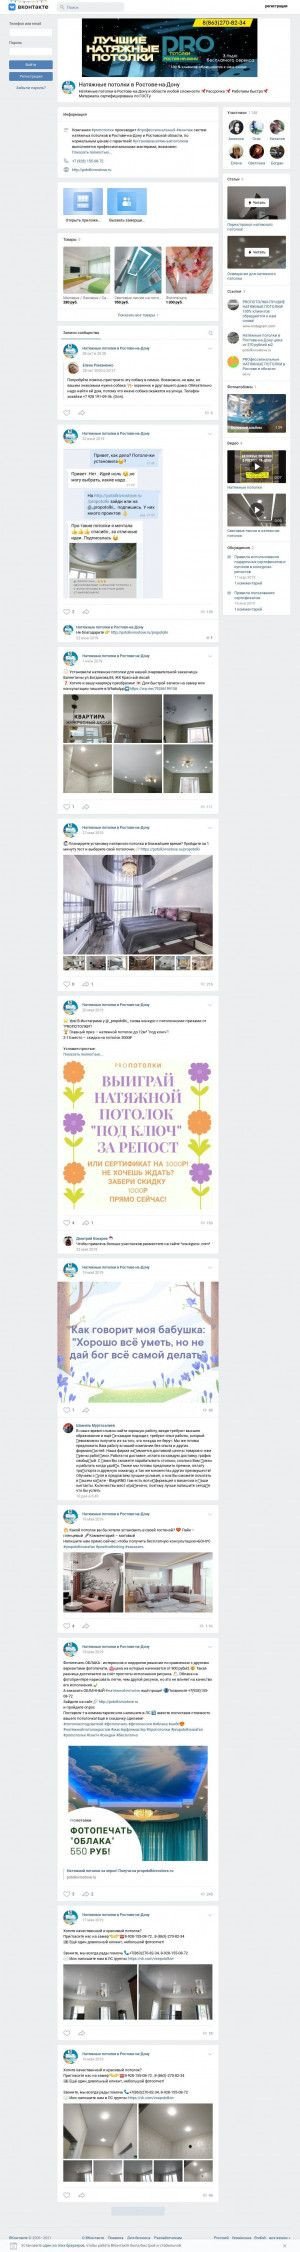 Предпросмотр для vk.com — Все потолки Ростова